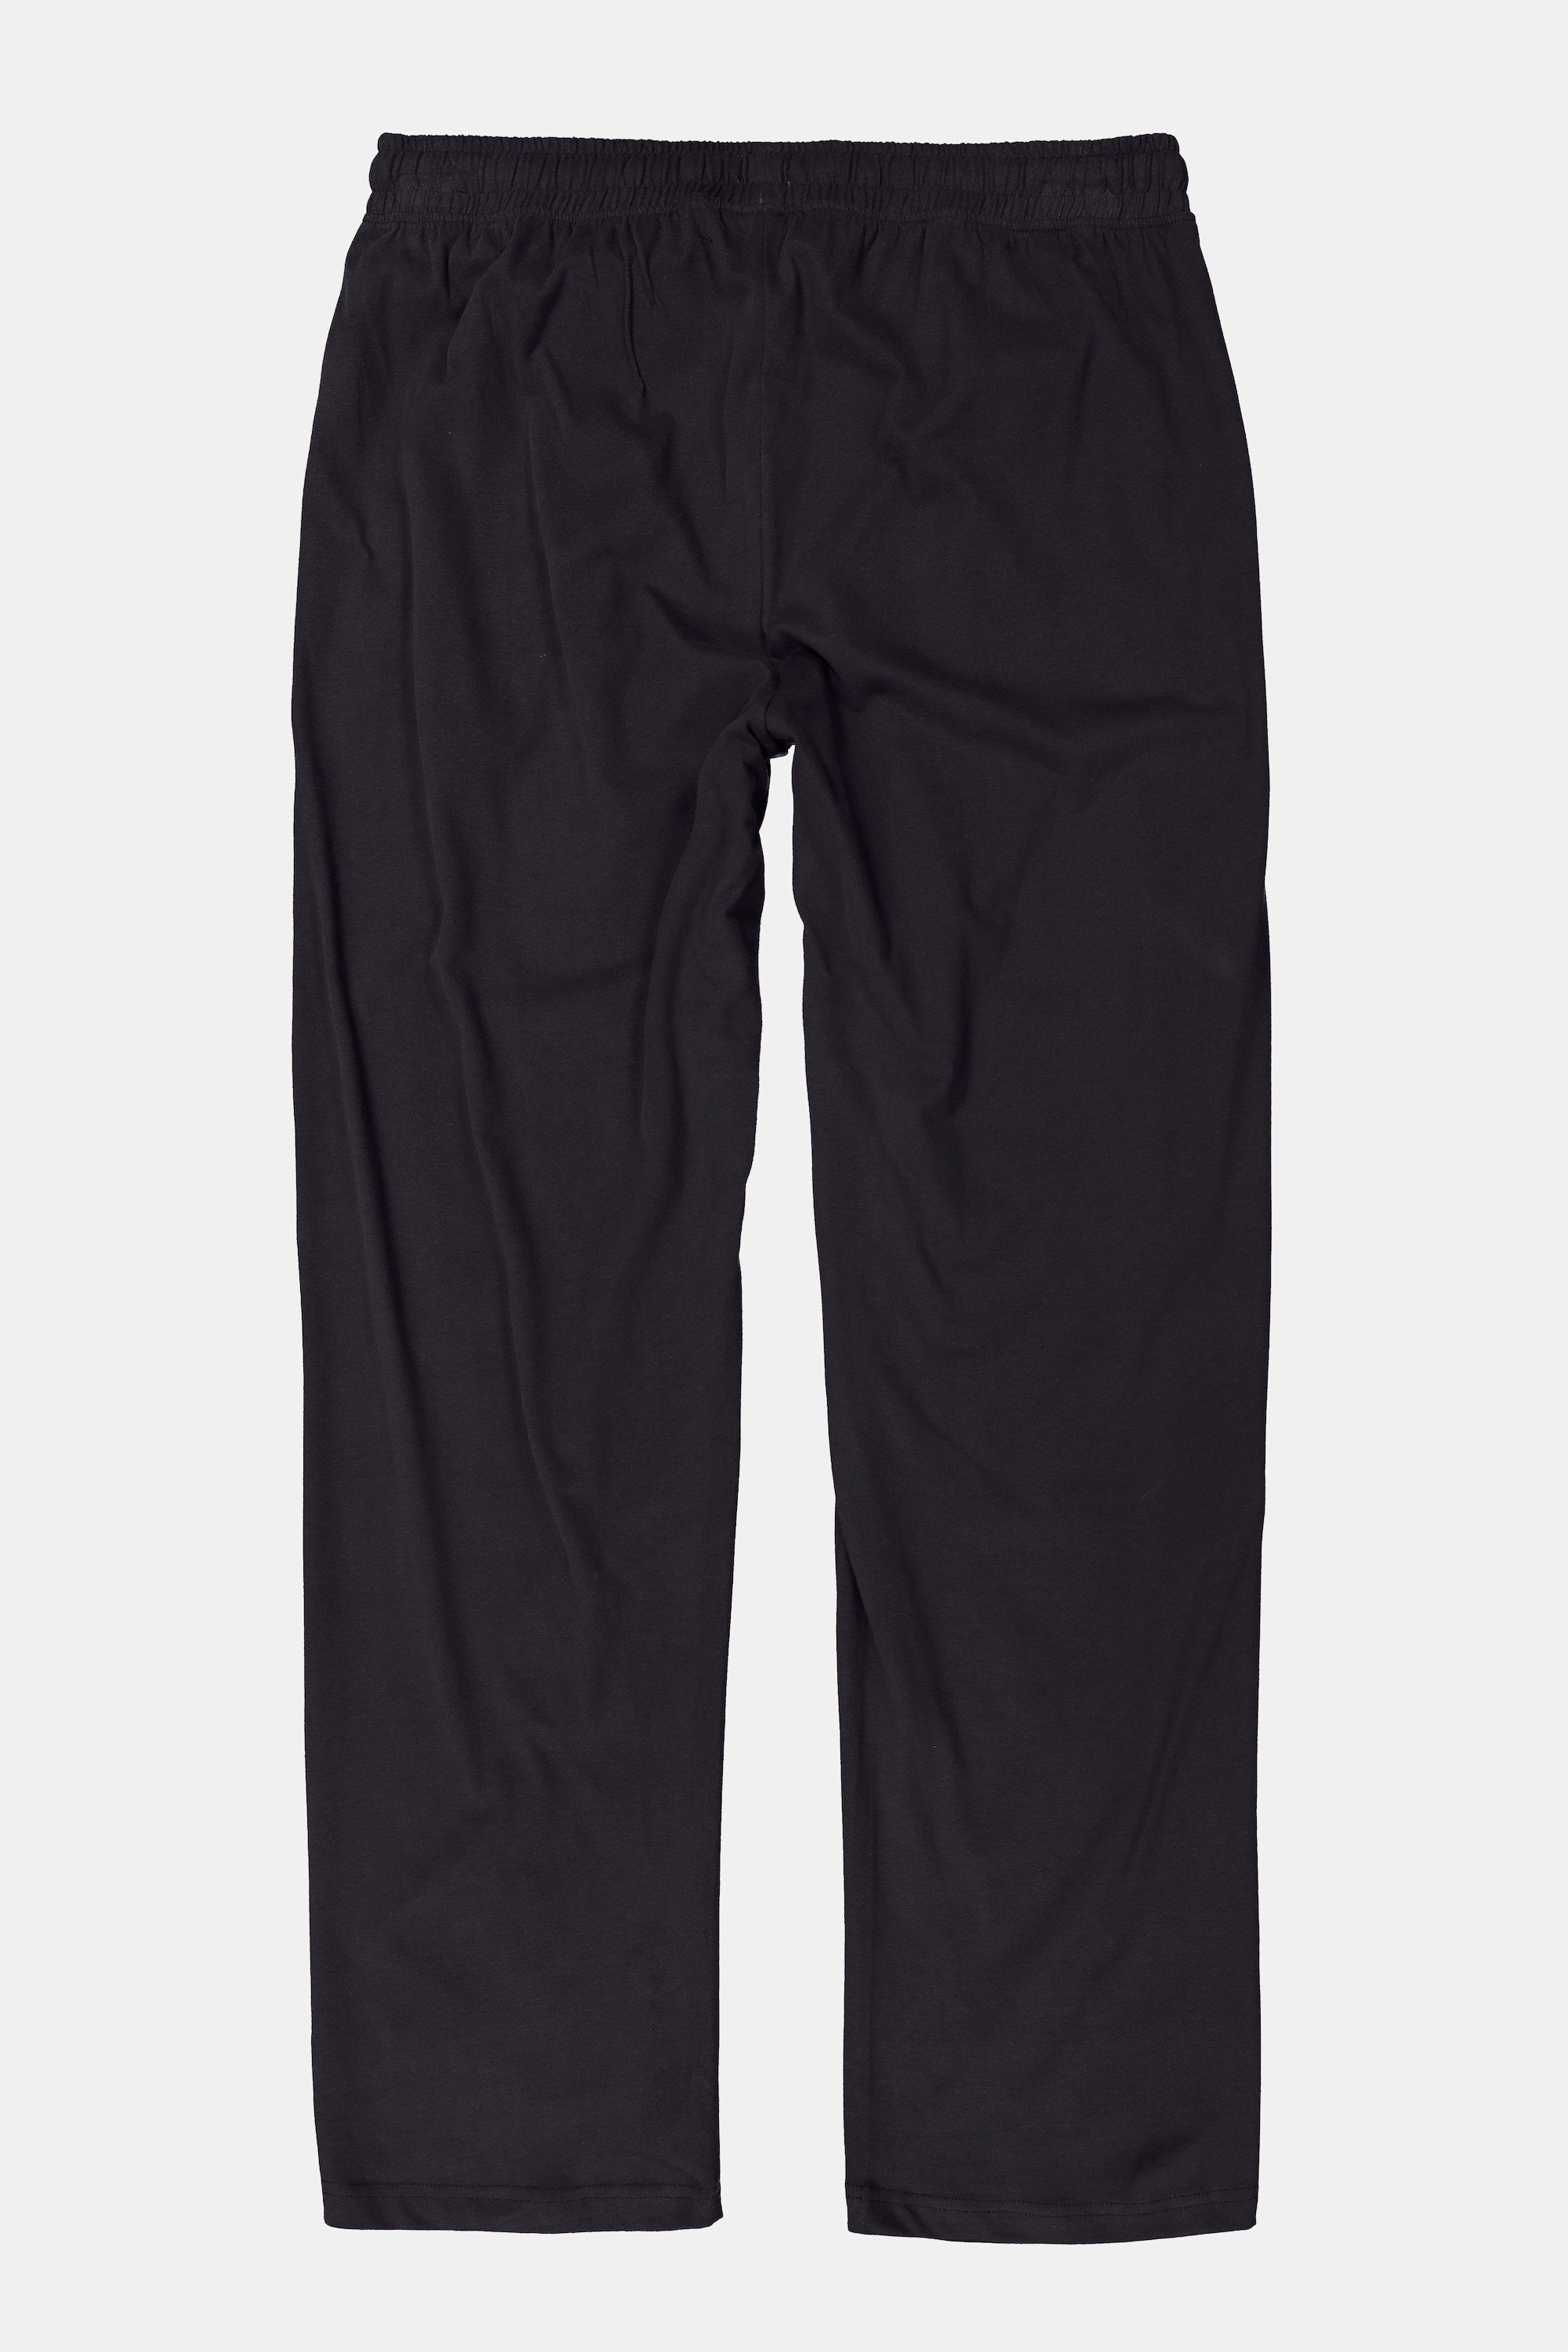 JP1880 Schlafanzug Schlafanzug-Hose Homewear lange schwarz Form Elastikbund